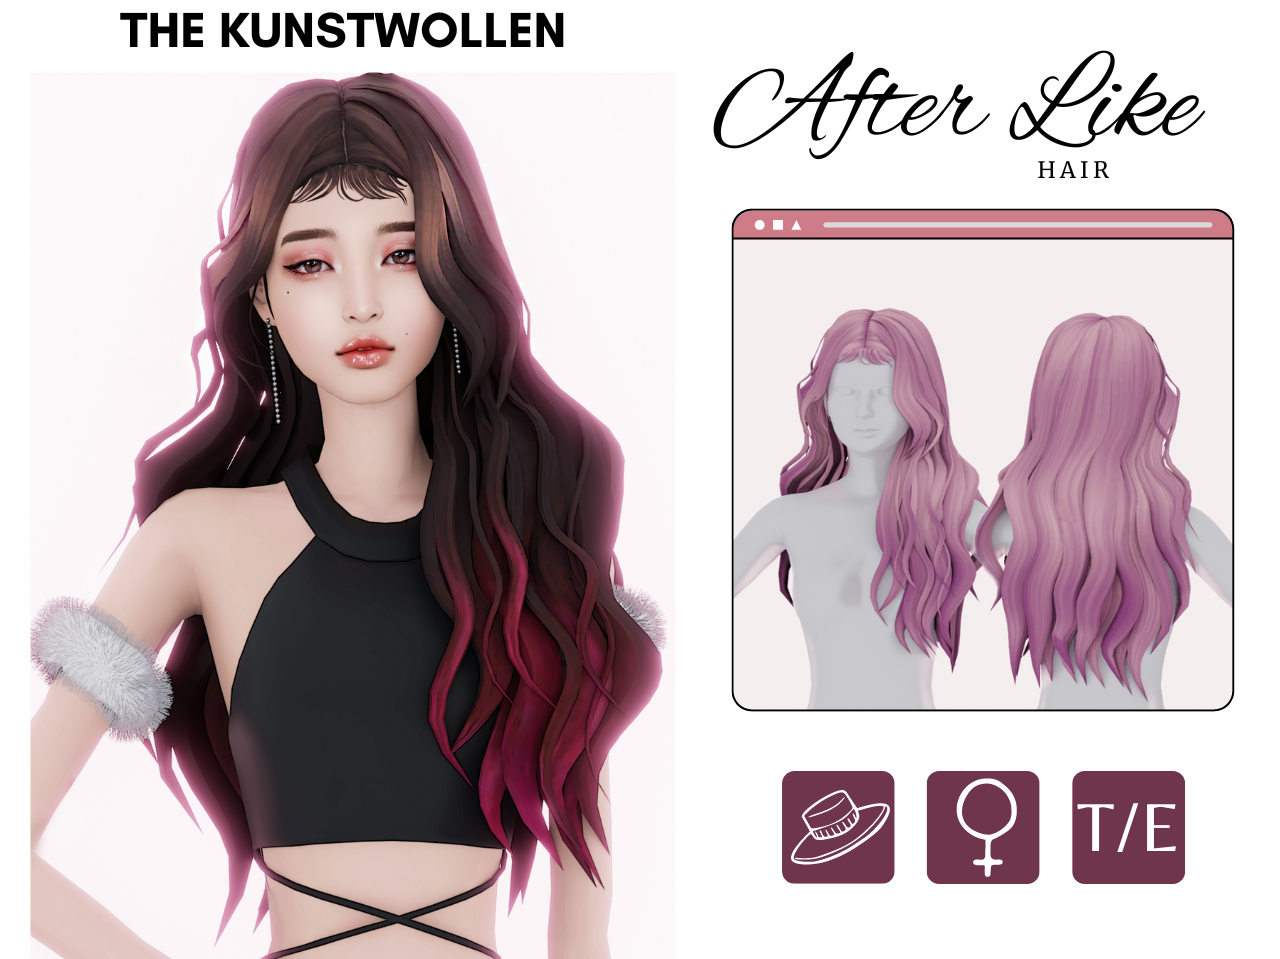 Luna Hair - Aretha - The Sims 4 Create a Sim - CurseForge